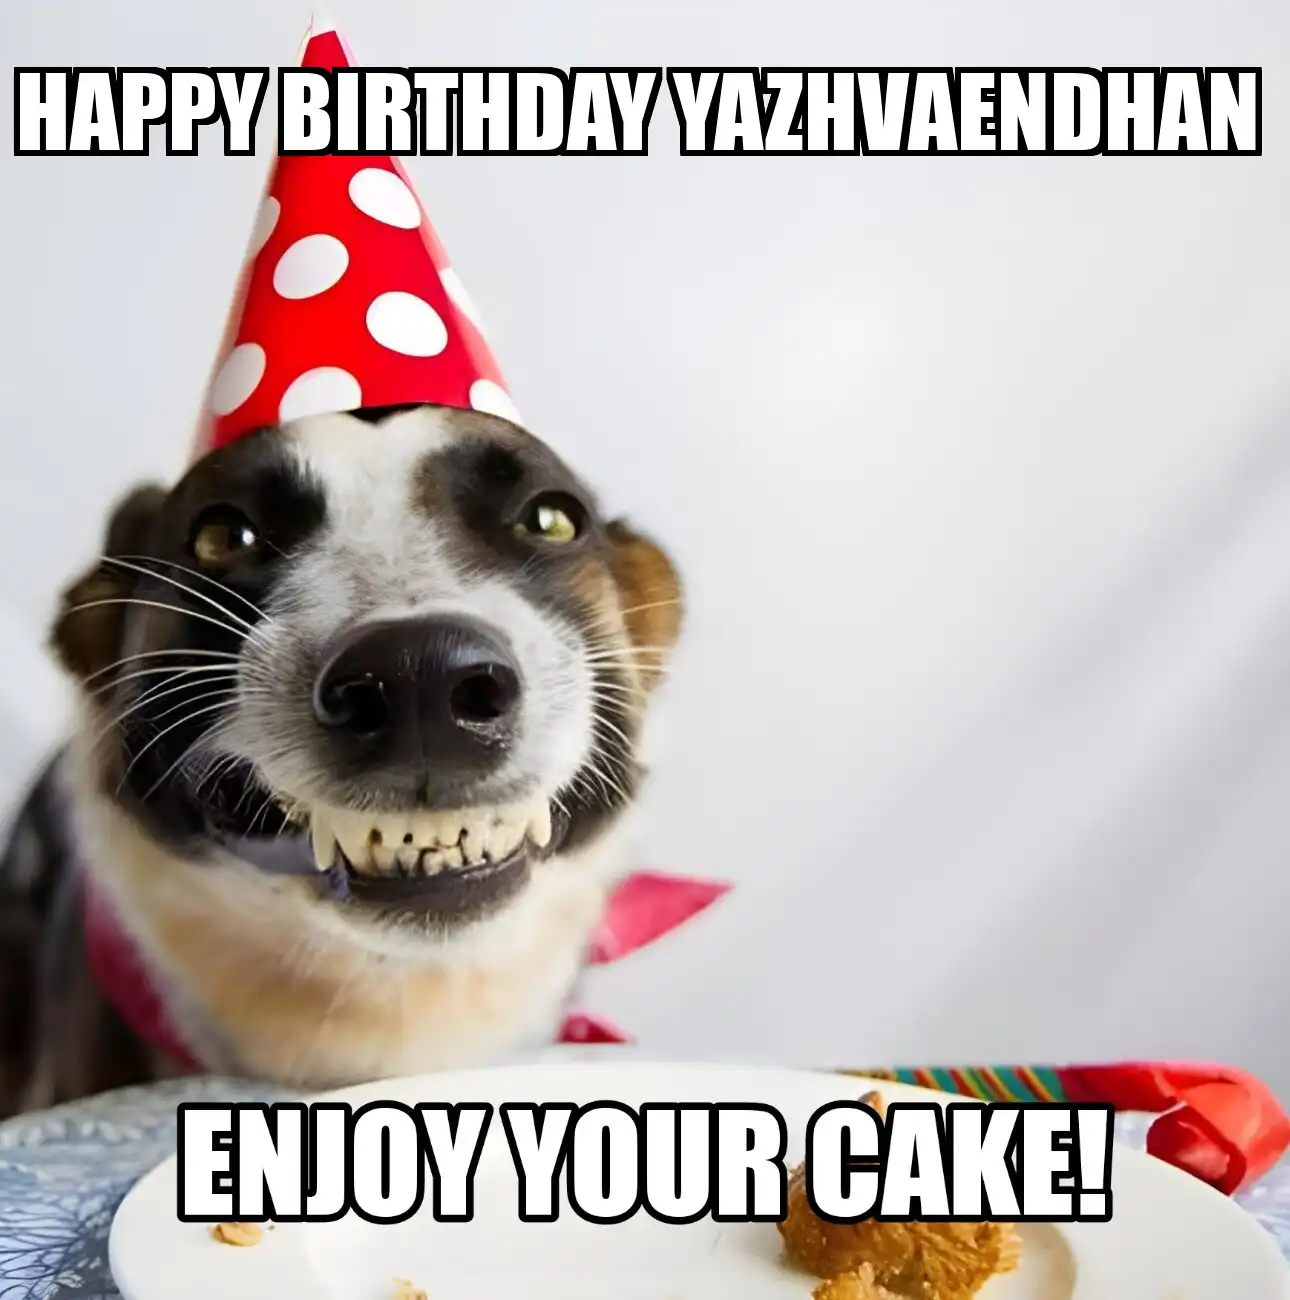 Happy Birthday Yazhvaendhan Enjoy Your Cake Dog Meme